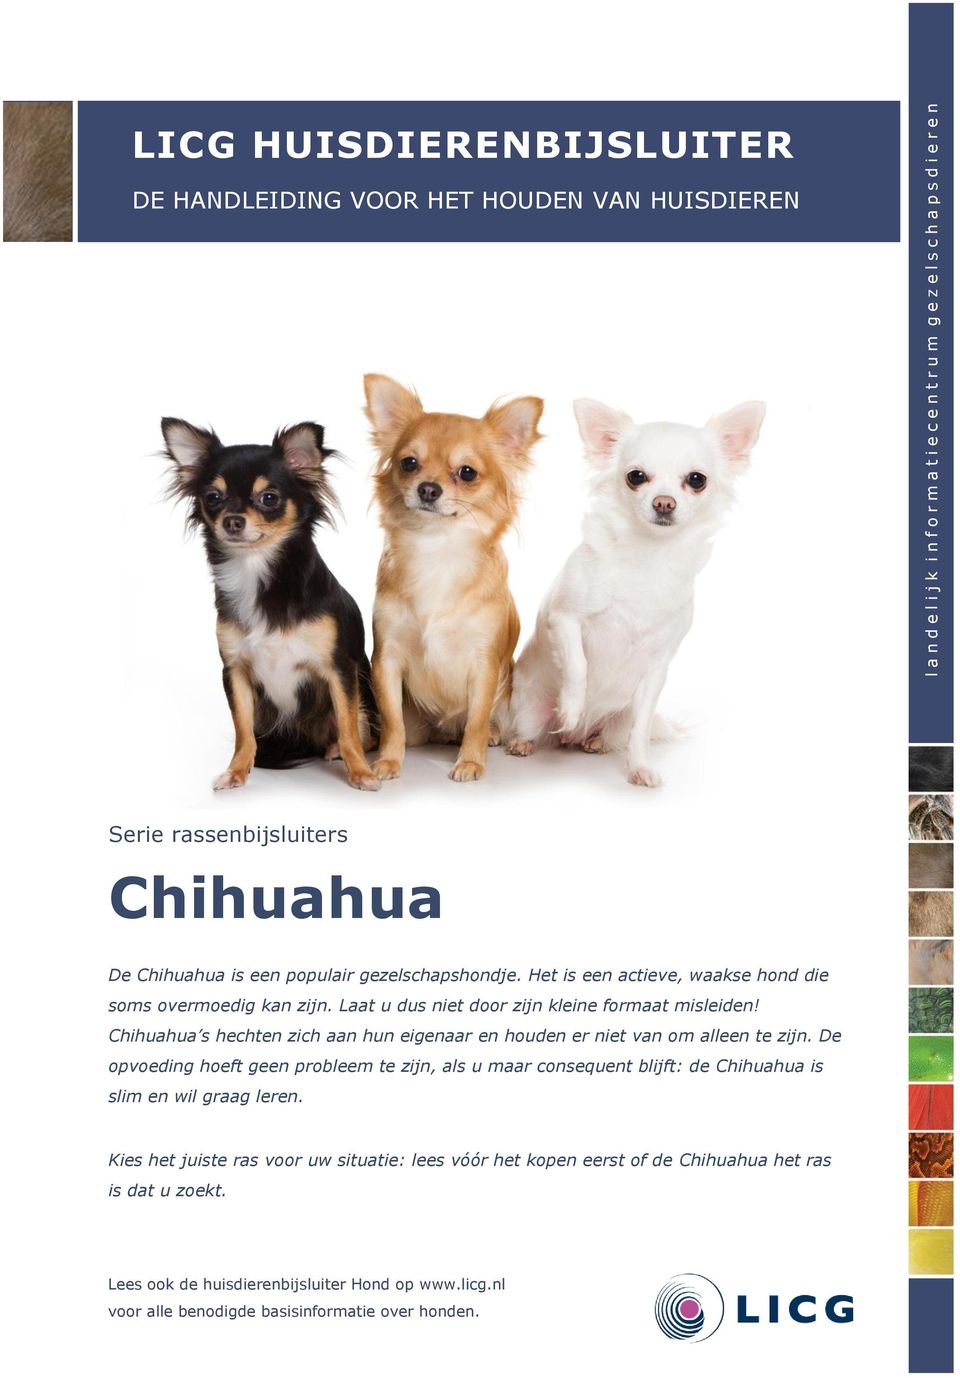 Chihuahua s hechten zich aan hun eigenaar en houden er niet van om alleen te zijn.